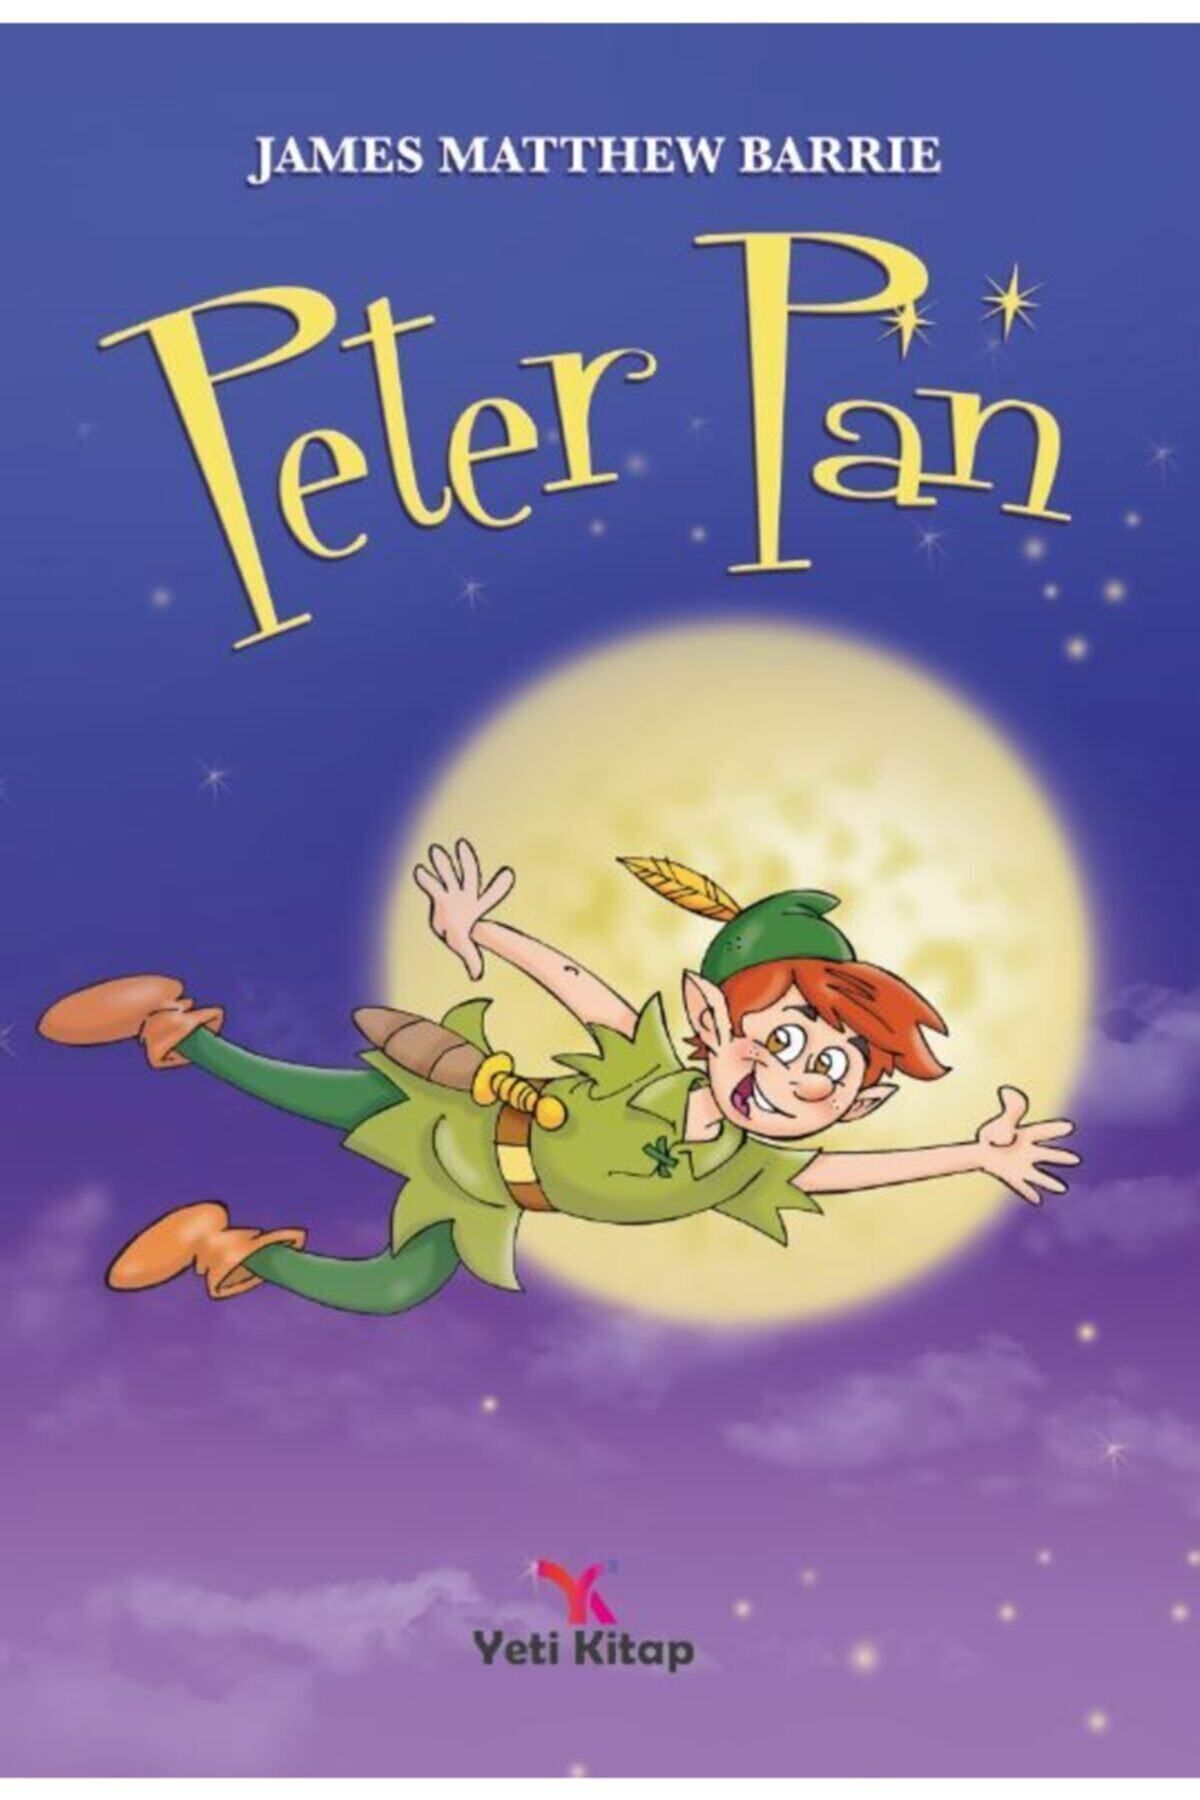 yeti kitap Peter Pan James Matthew Barrie